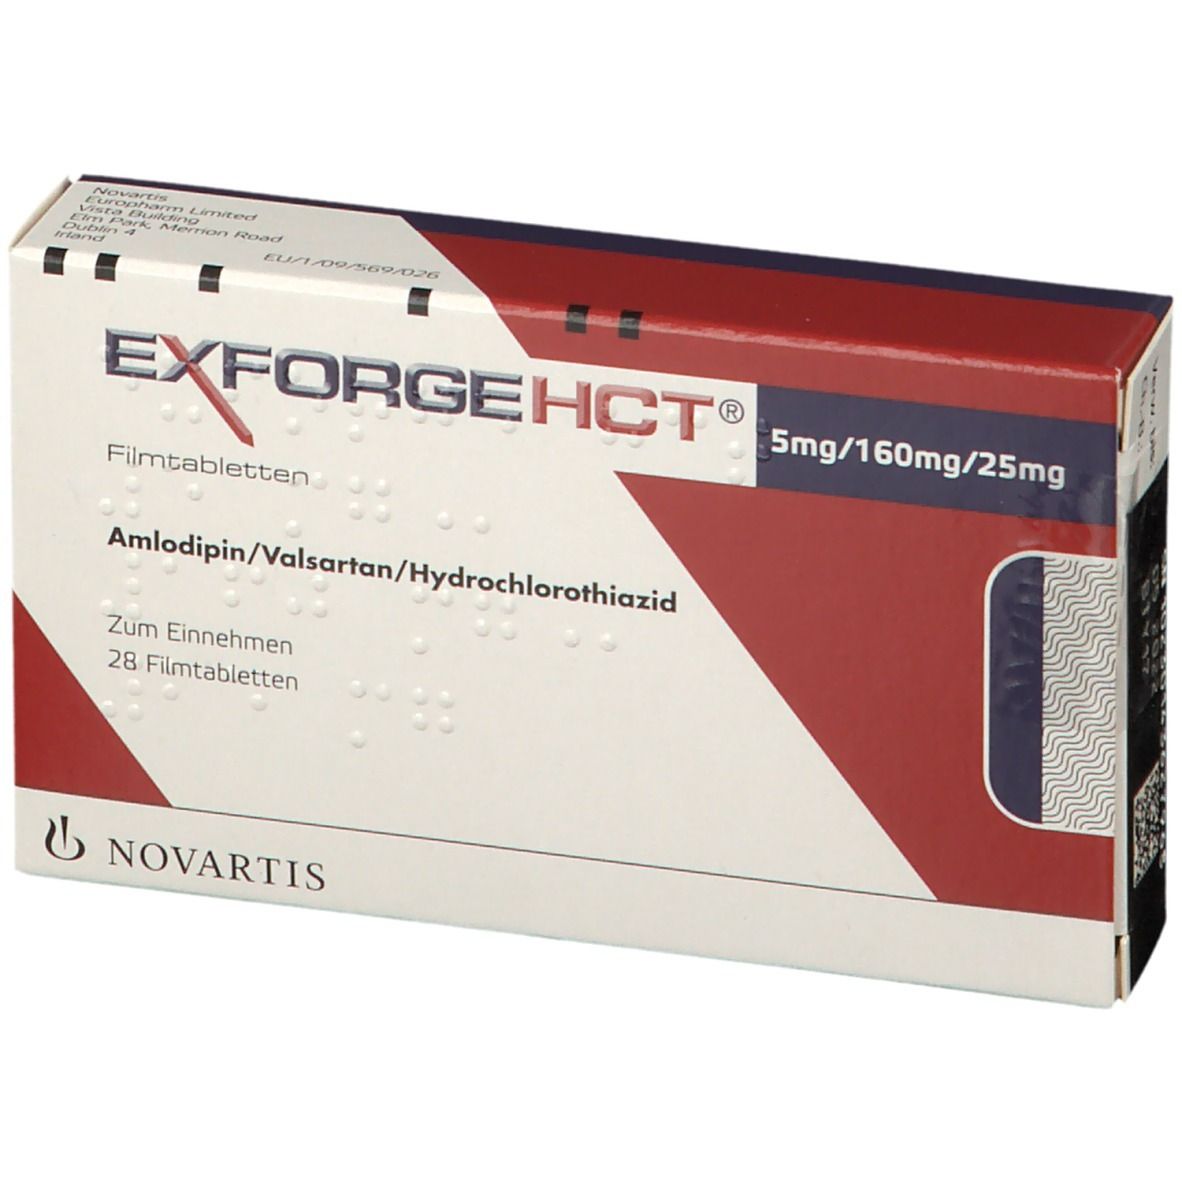 Exforge® HCT 5 mg/160 mg/25 mg